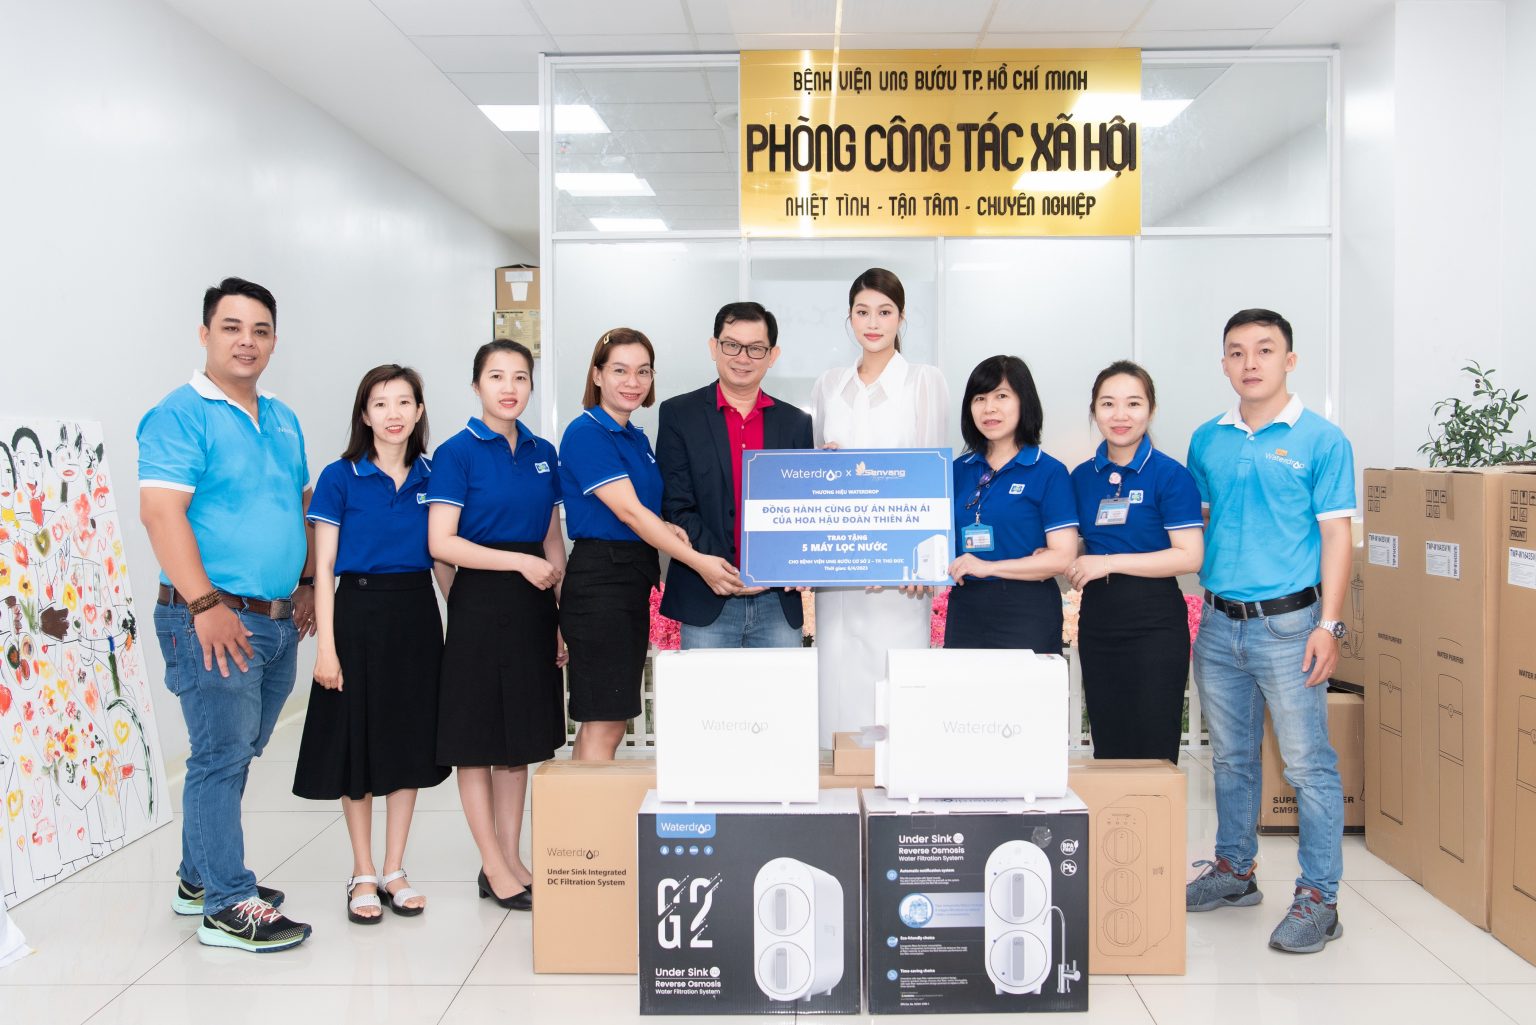 Hoa hậu Đoàn Thiên Ân trao tặng máy lọc nước cho Bệnh viện Ung Bướu Cơ sở 2